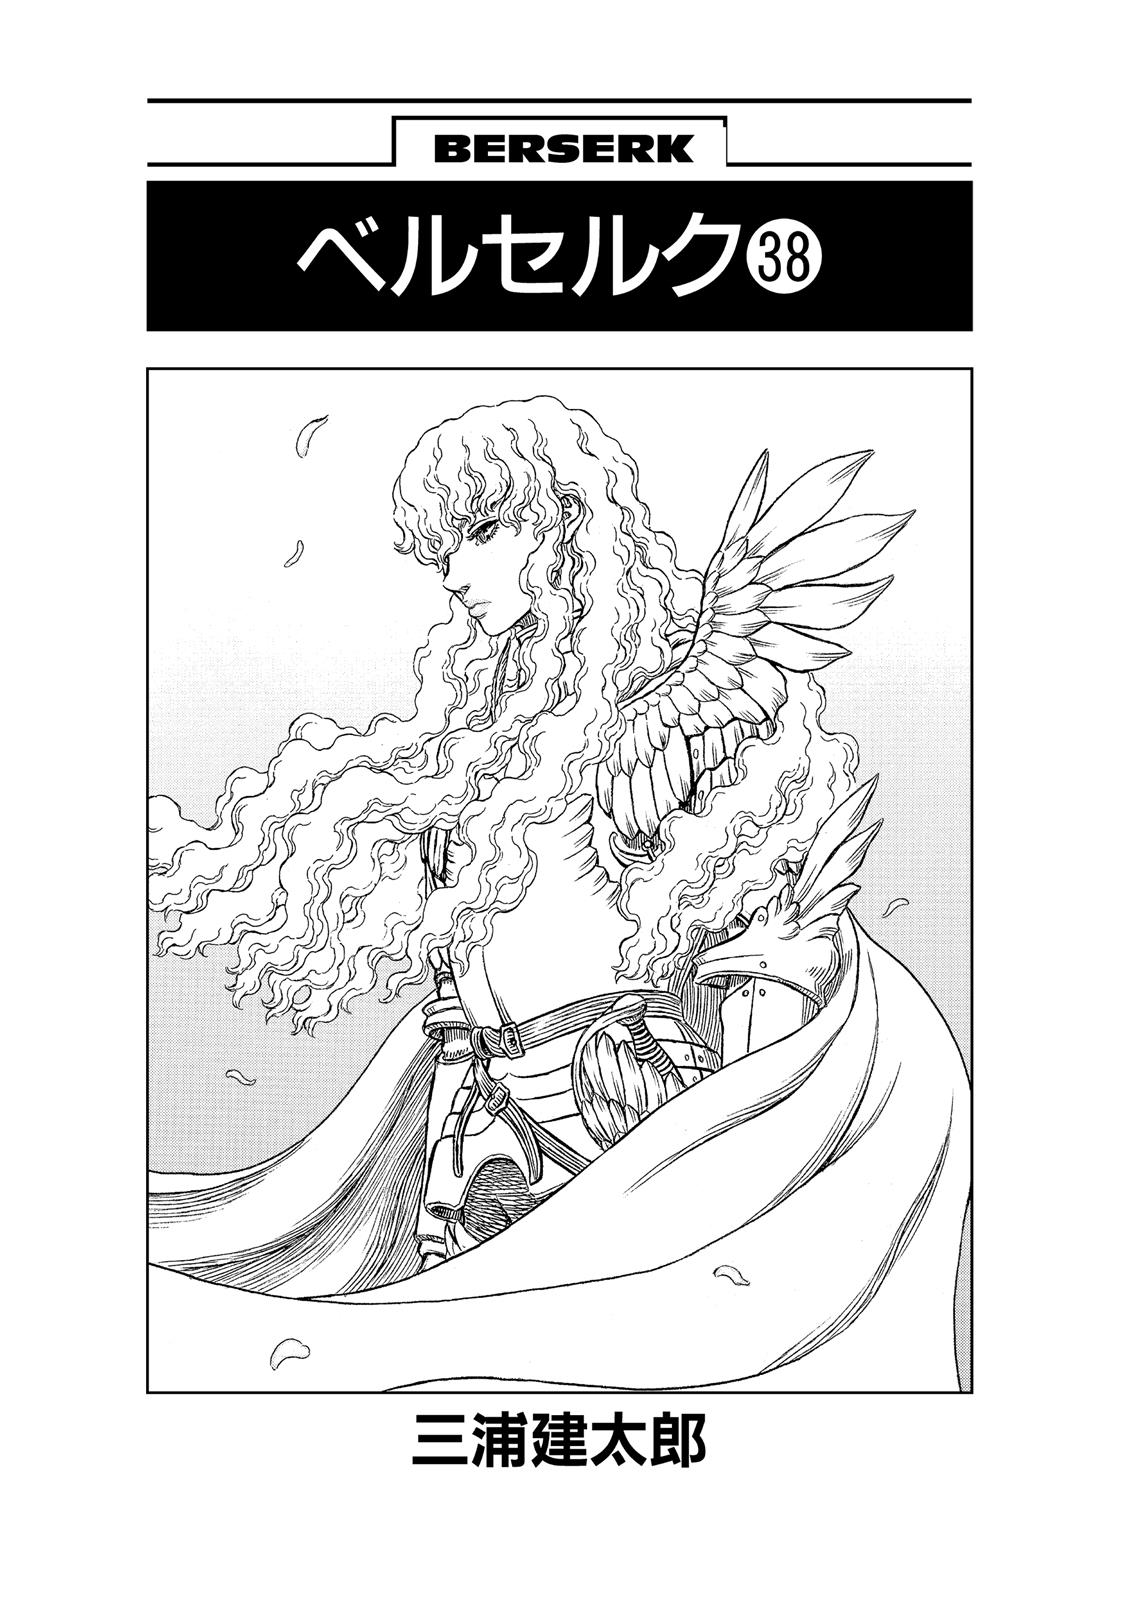 Berserk Manga Chapter 334 image 06